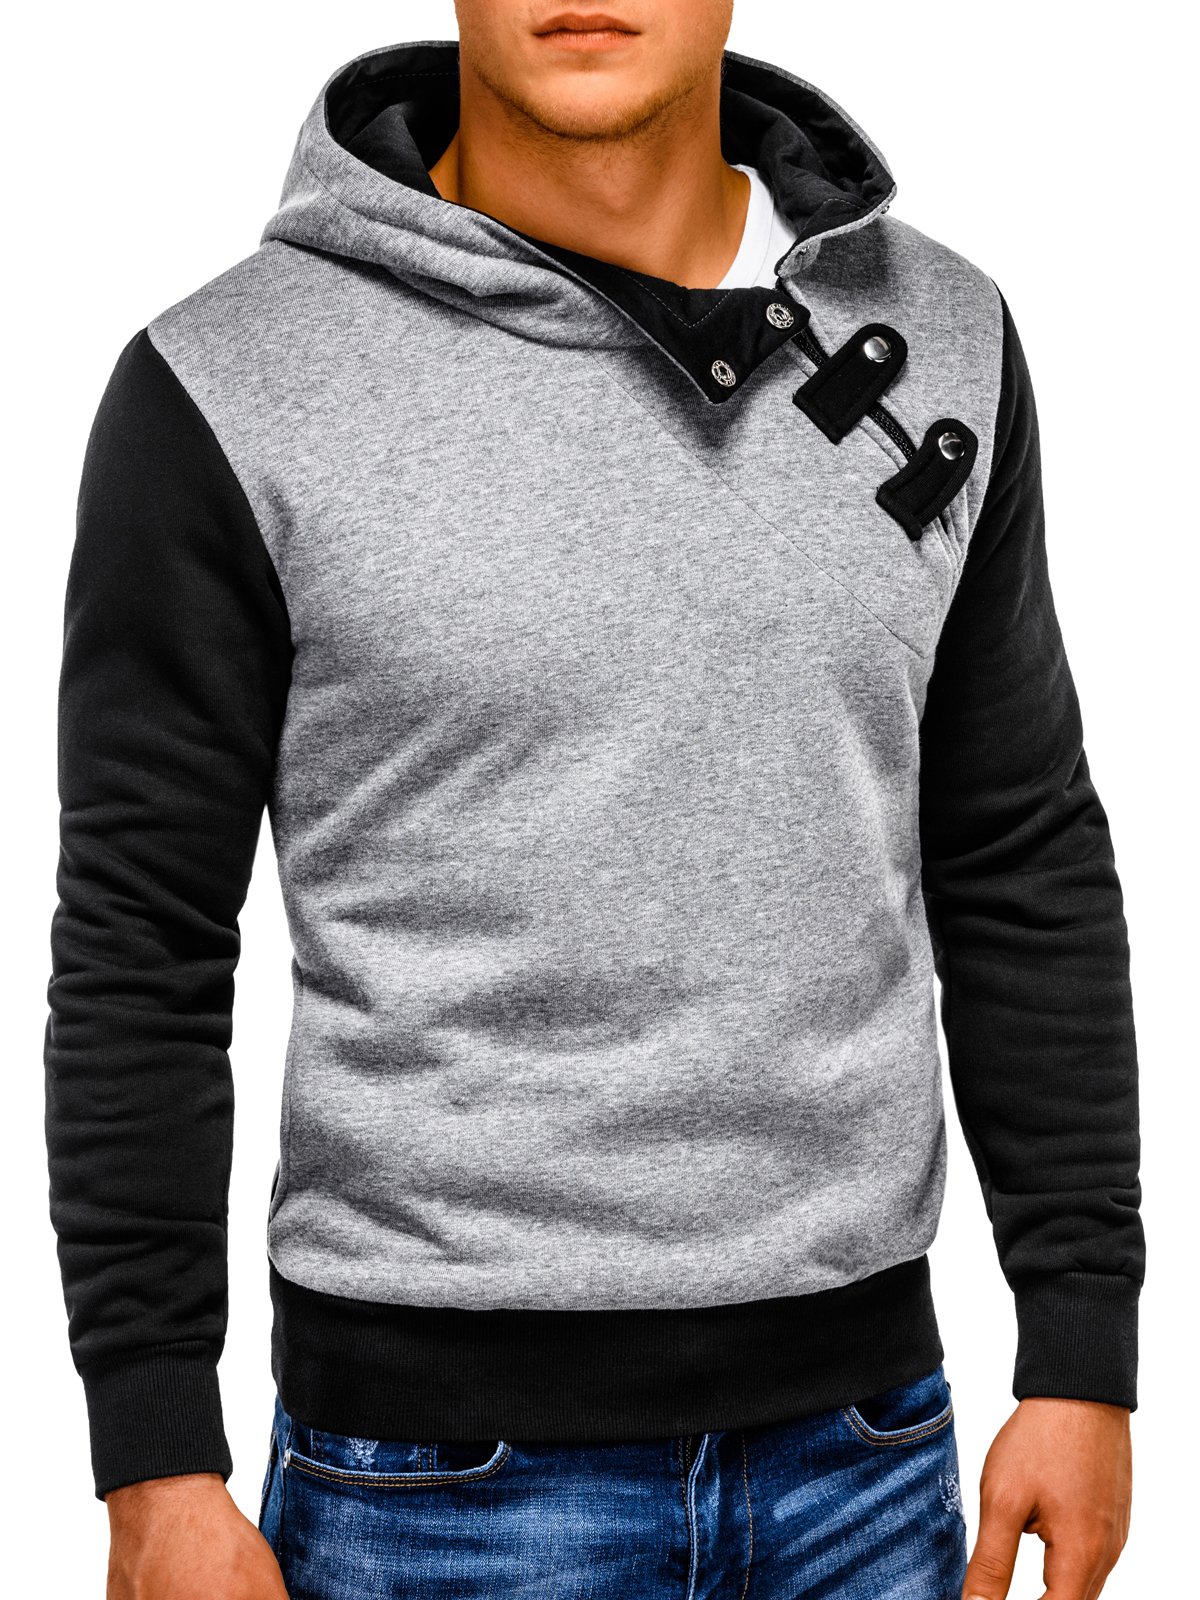 Men's hoodie PACO - dark grey/black | MODONE wholesale - Clothing For Men